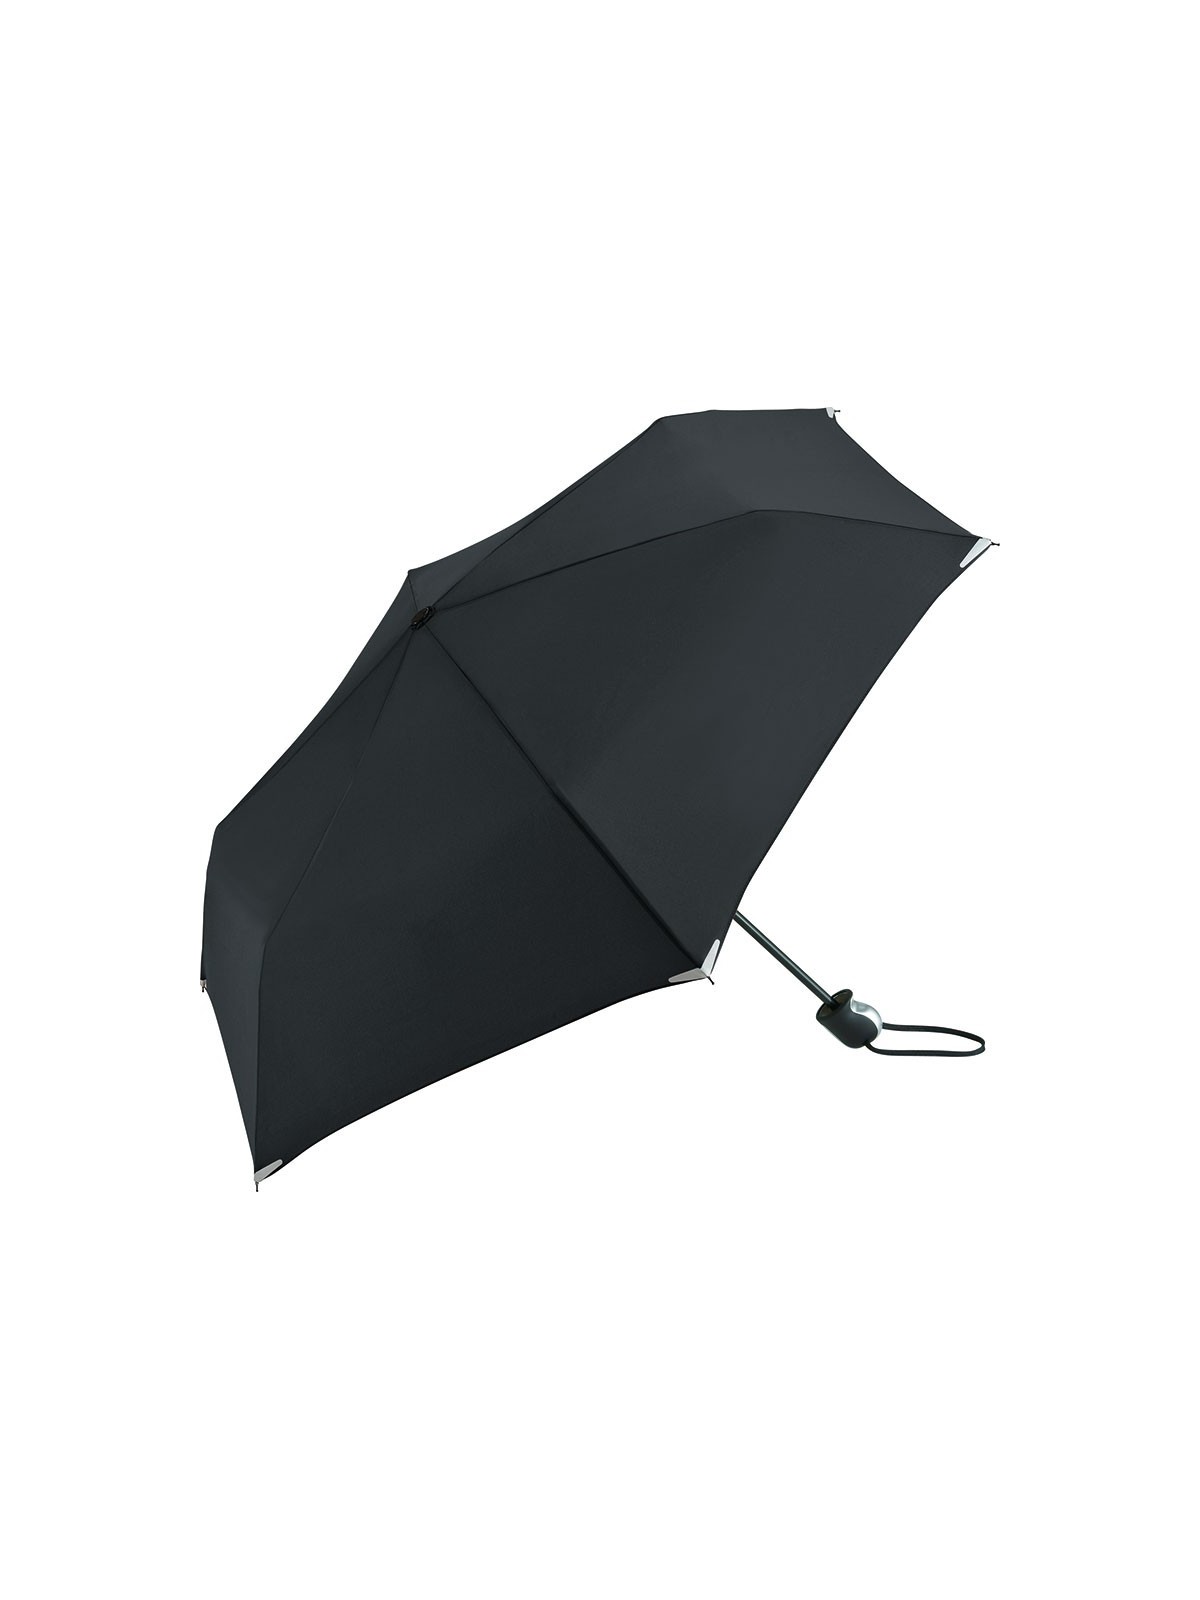 75-010 Mini parapluie publicitaire Safebrella personnalisé